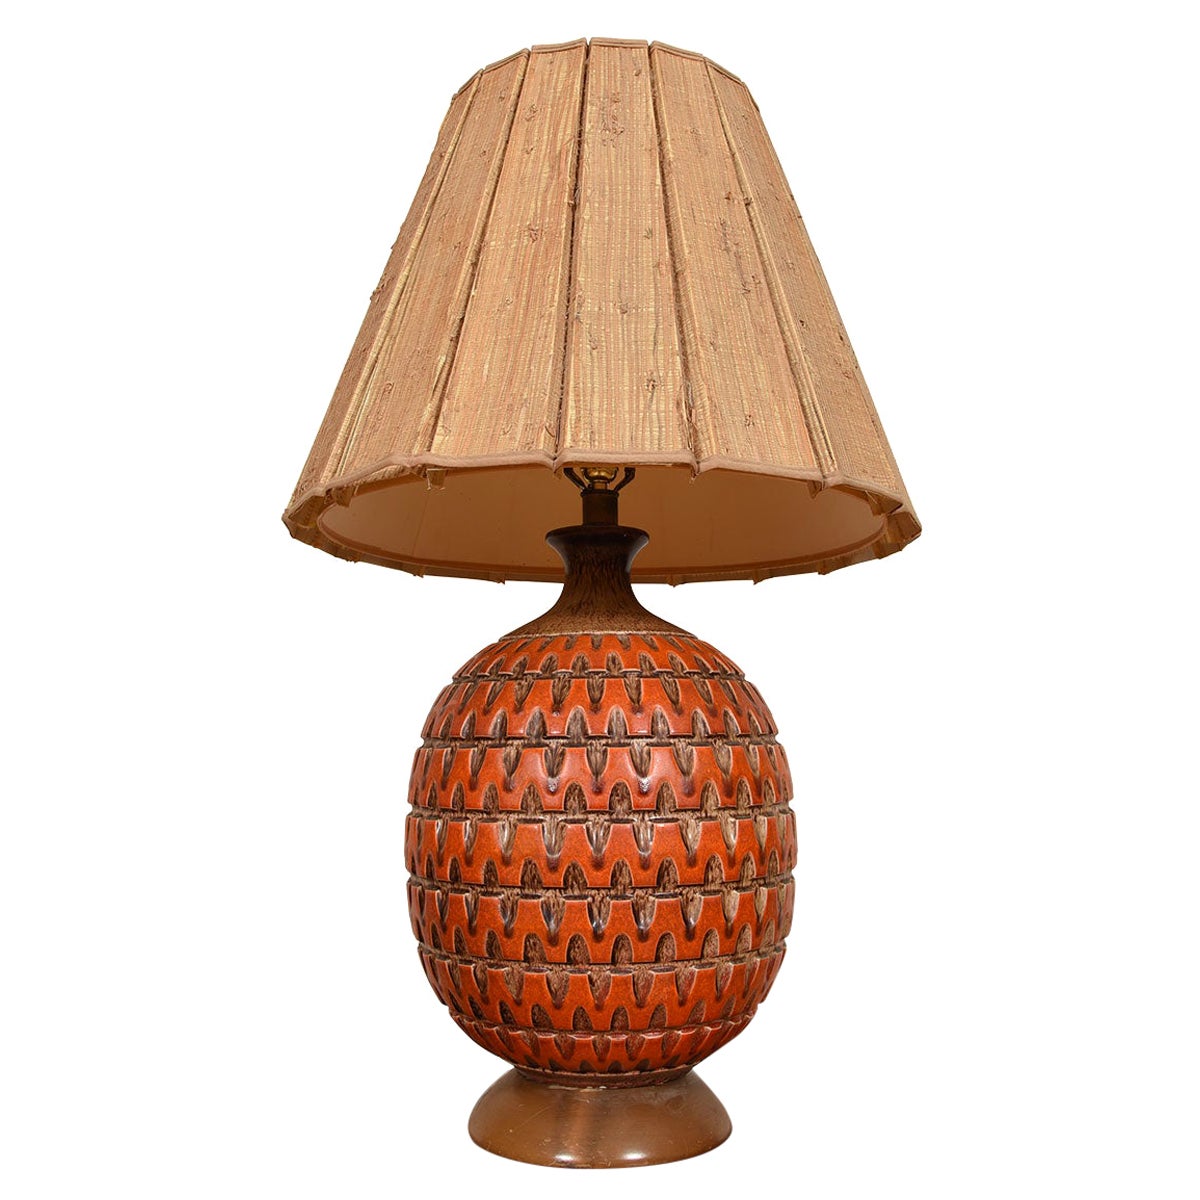 Übergroße Deko-Lampe in gebranntem Orange mit großartiger Textur und Präsenz